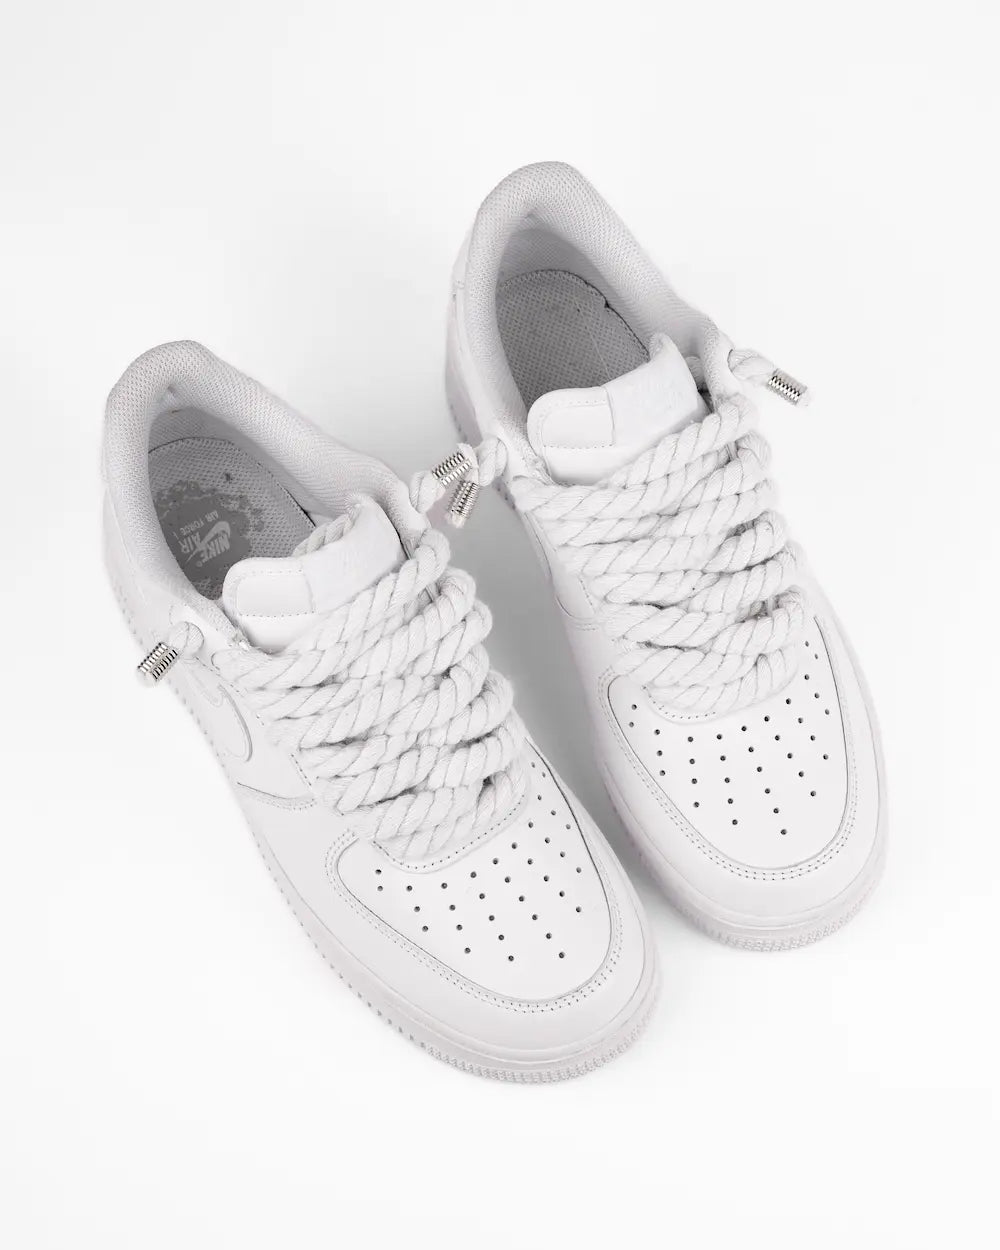 Nike Air Force 1 bianca personalizzata con lacci in corda bianchi